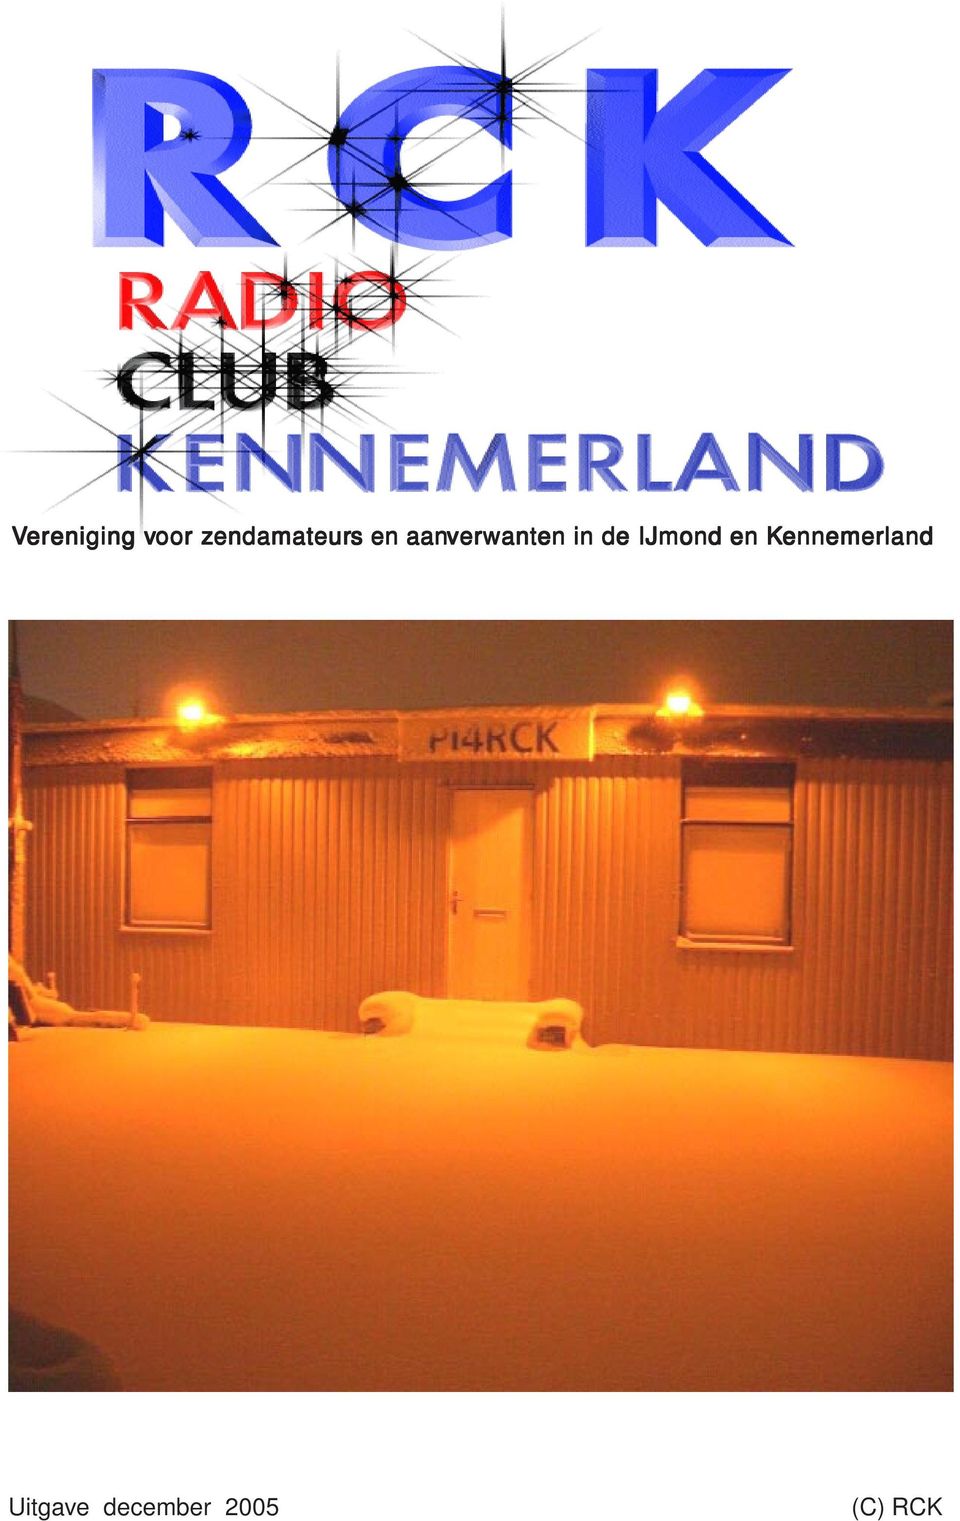 Kennemerland R A D I O Club Kennemerland